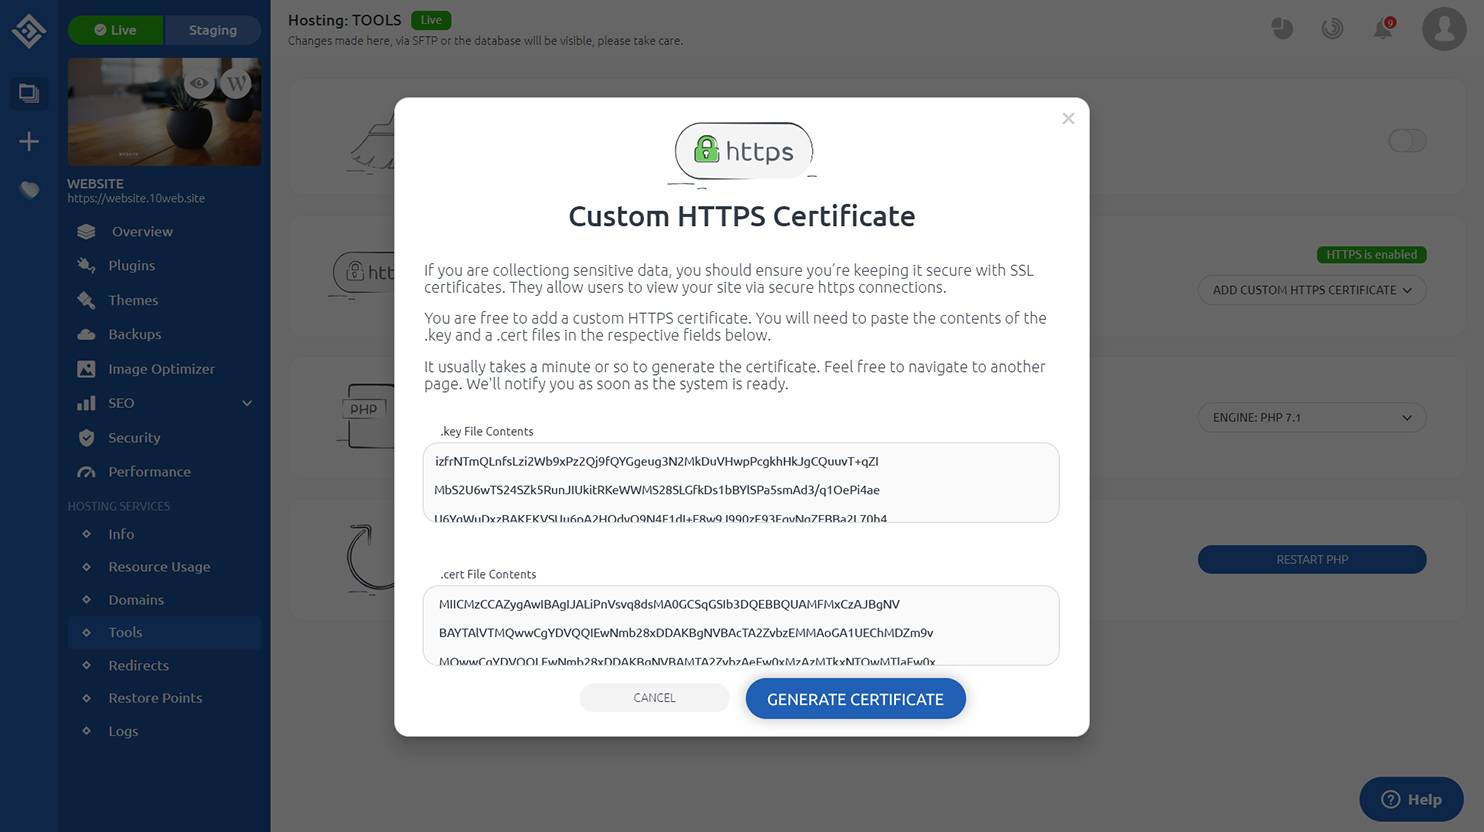 generate the certificate